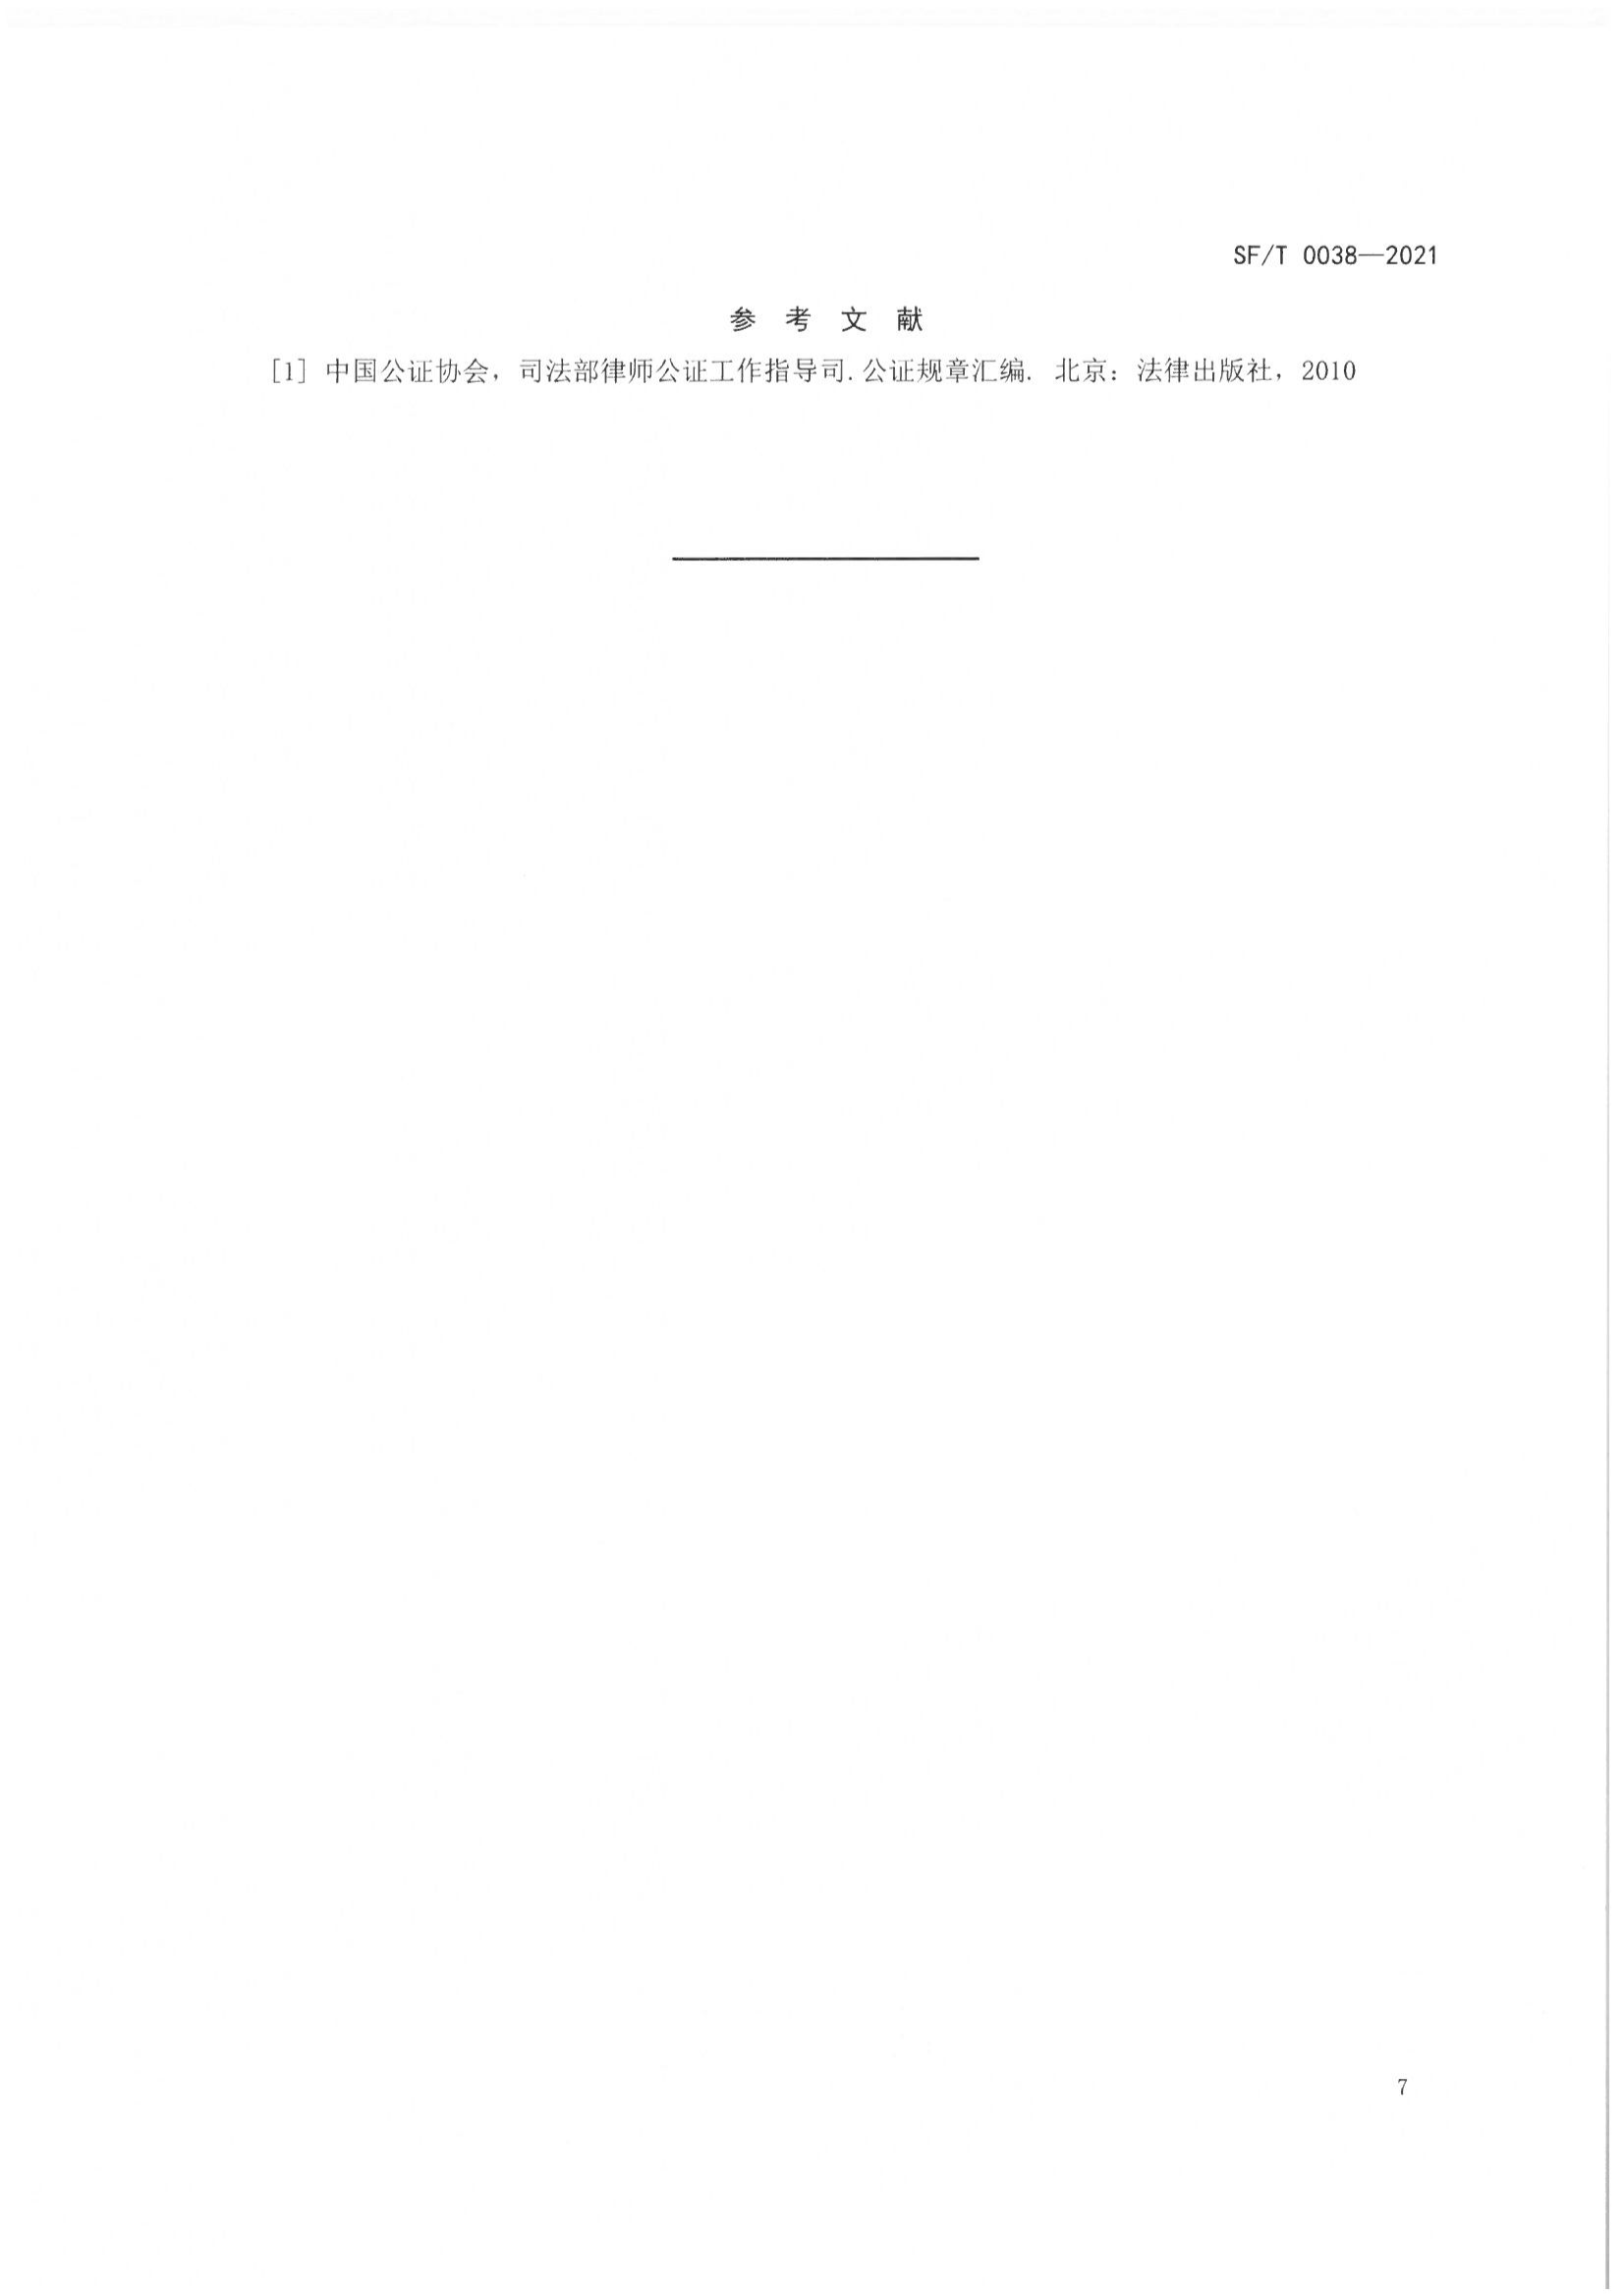 京公协字【2021】23号 北京市公证协会关于印发《公证书制作规范（SFT0038-2021）》（修订）的通知_11